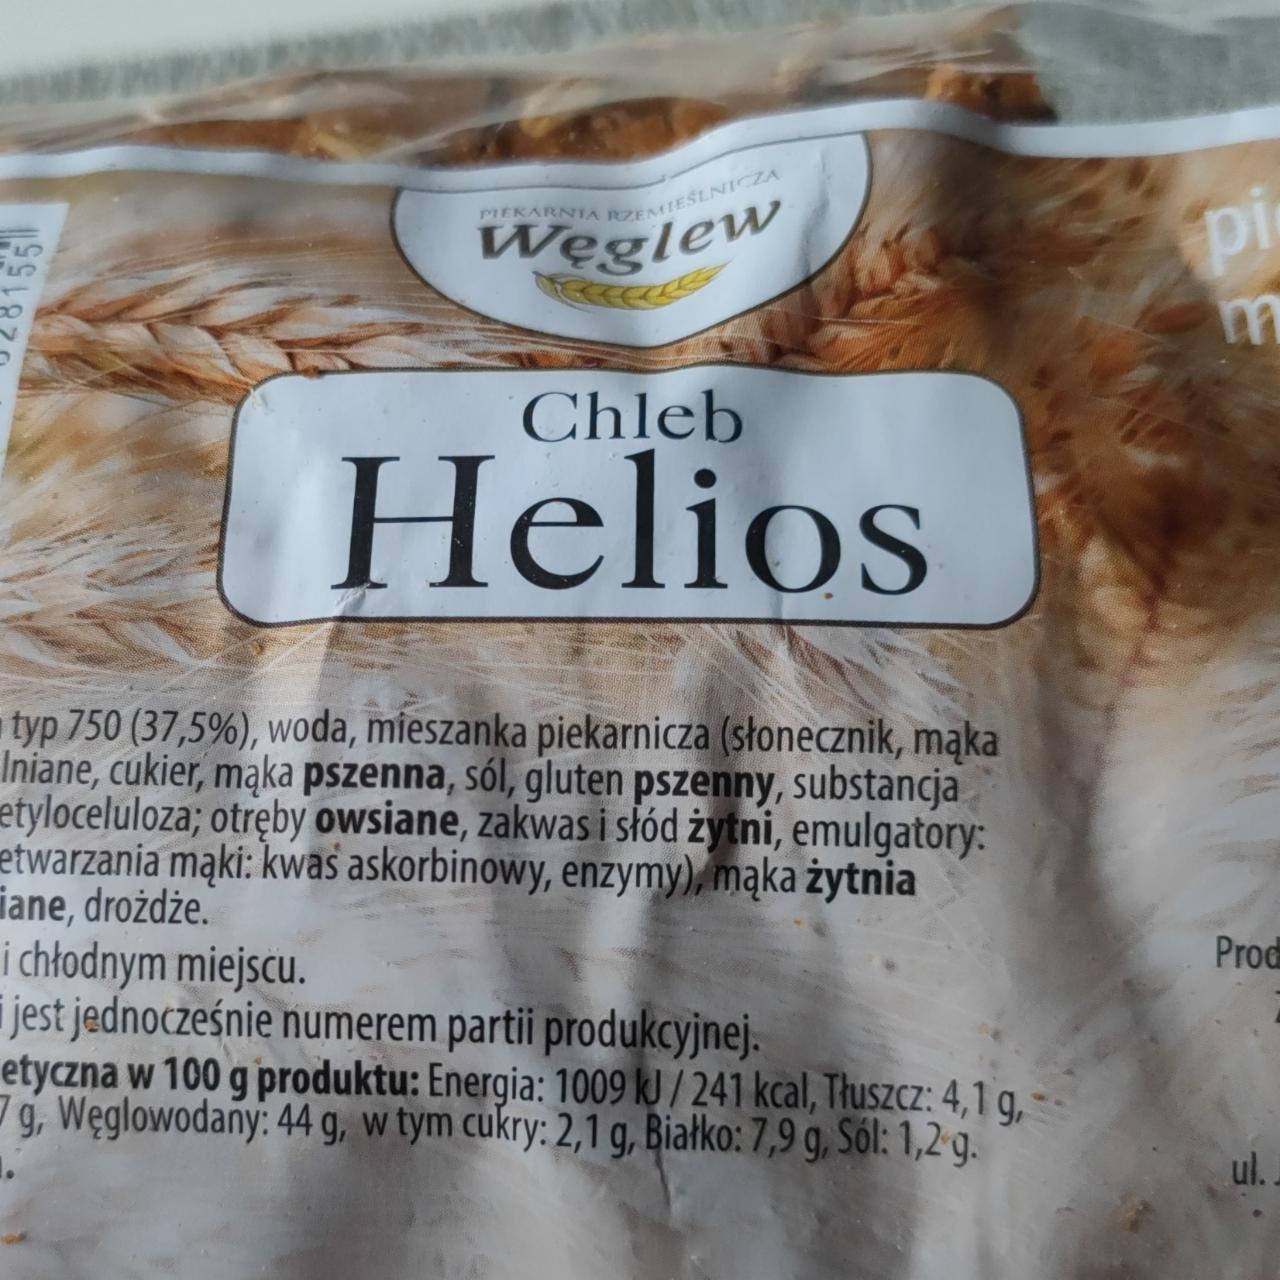 Zdjęcia - chleb Helios Piekarnia rzemieślnicza Węglew